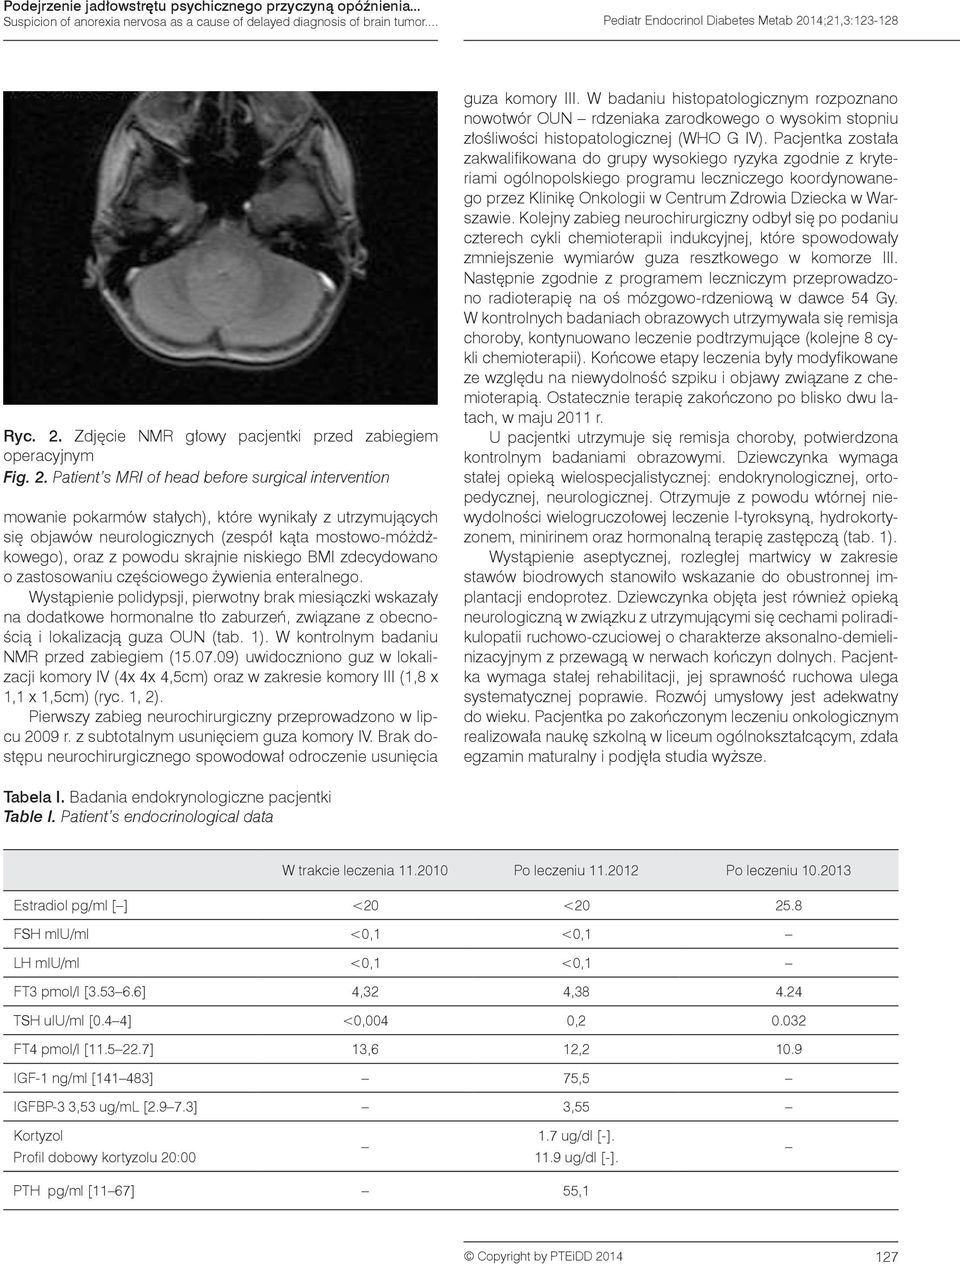 Patient s MRI of head before surgical intervention mowanie pokarmów stałych), które wynikały z utrzymujących się objawów neurologicznych (zespół kąta mostowo-móżdżkowego), oraz z powodu skrajnie